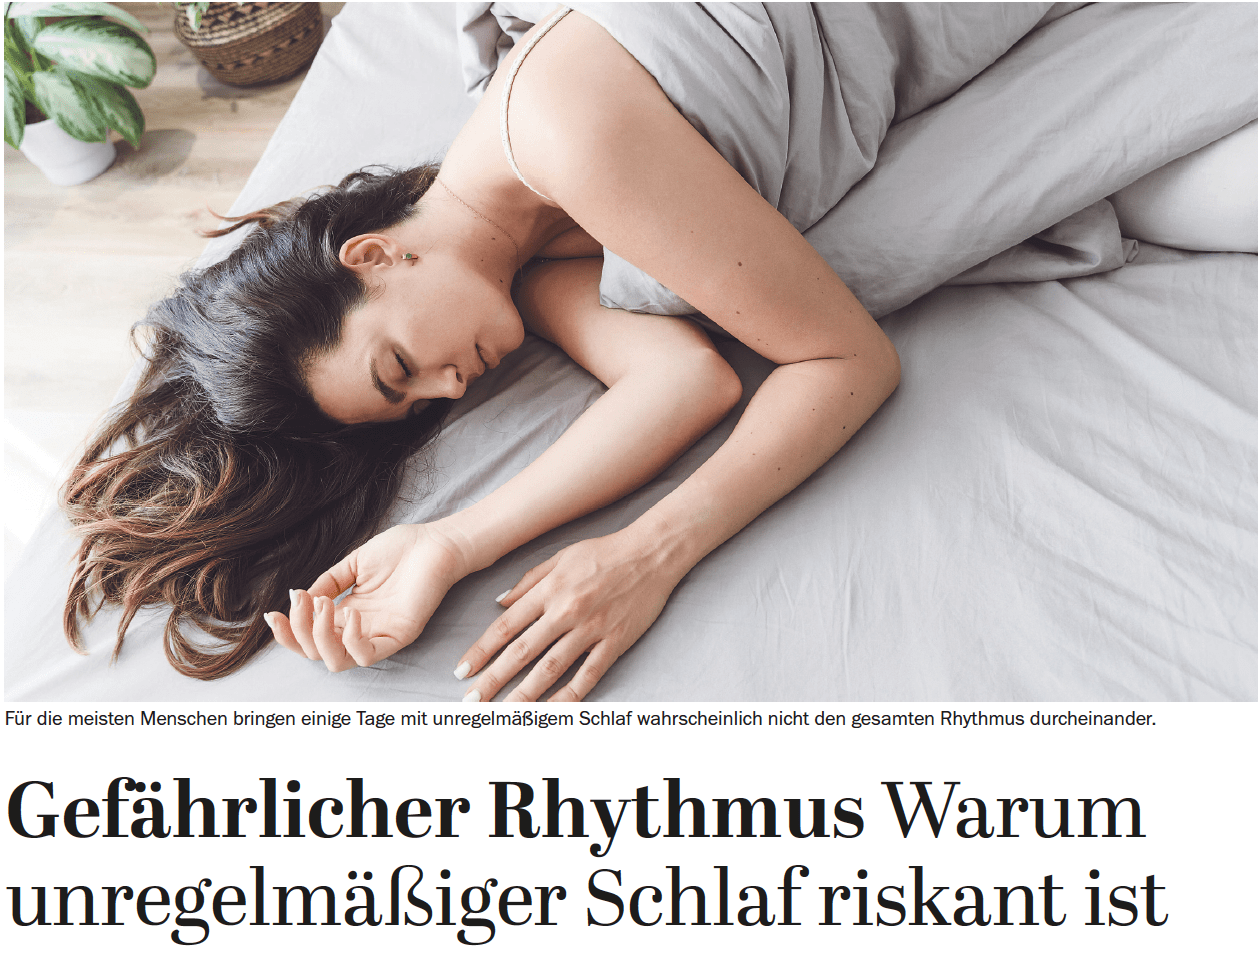 Gefährlicher Rhythmus – Warum unregelmäßiger Schlaf riskant ist